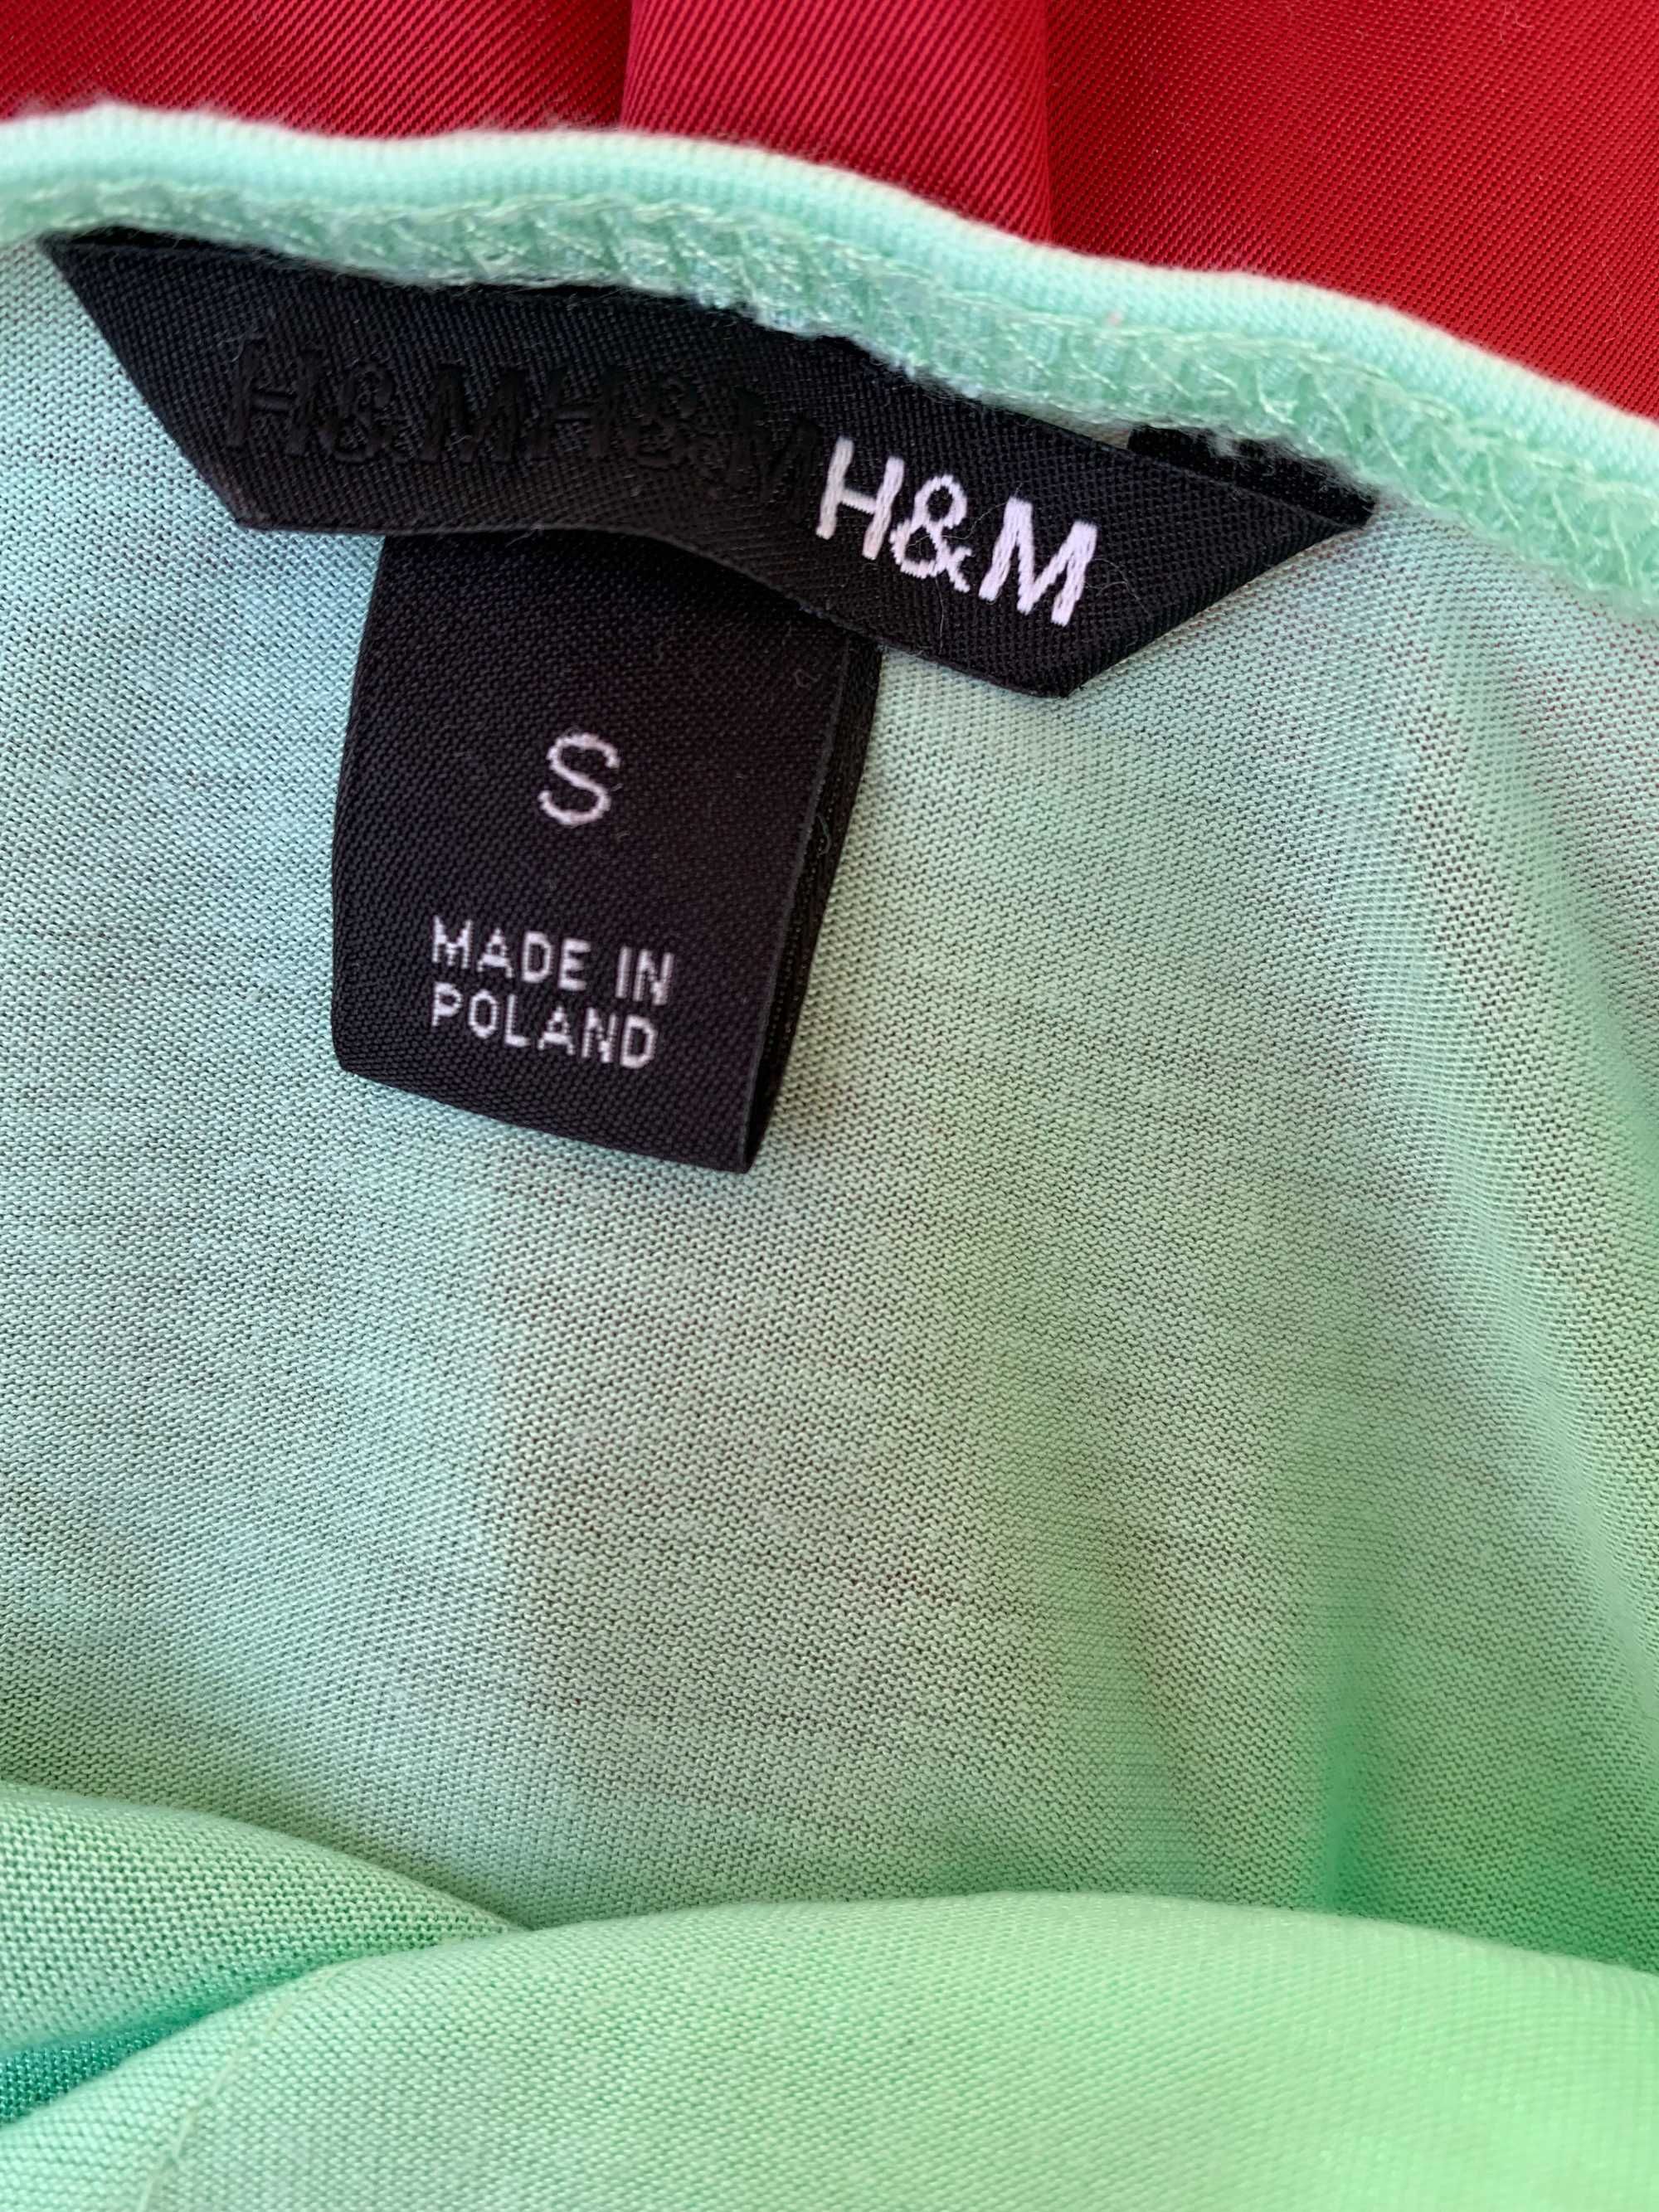 Miętowy top H&M, rozm s